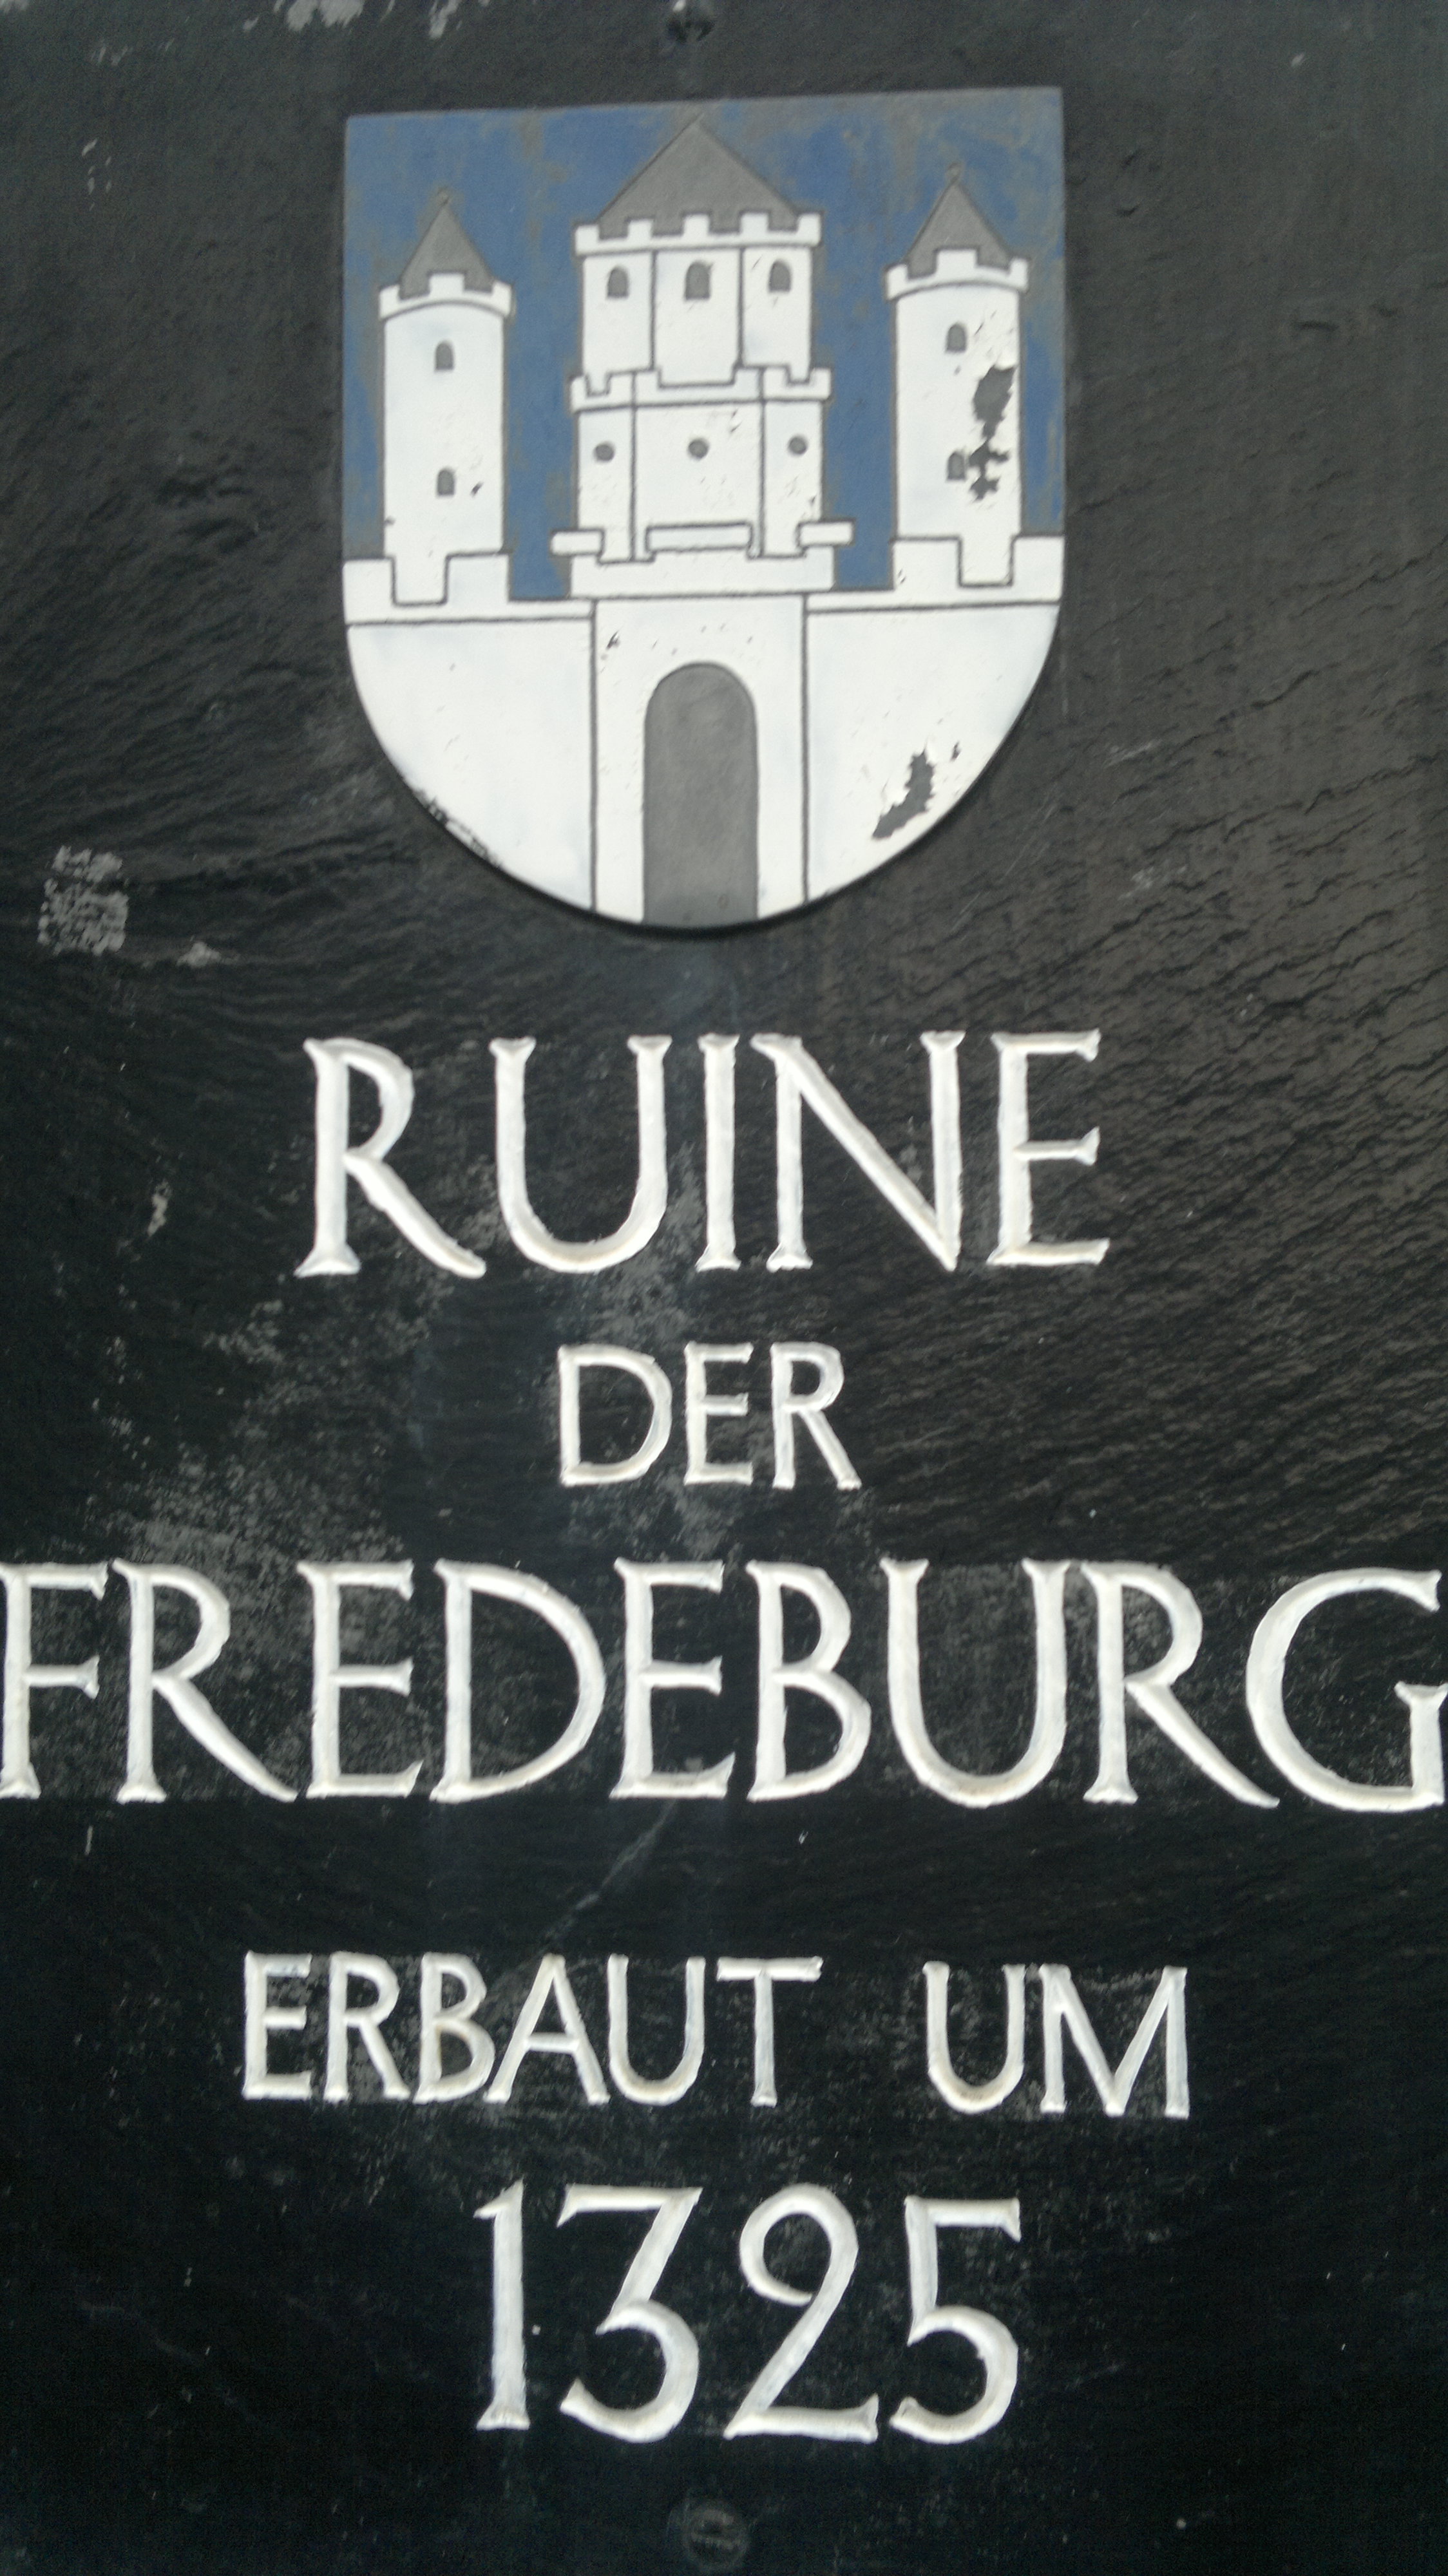 Fredeburg